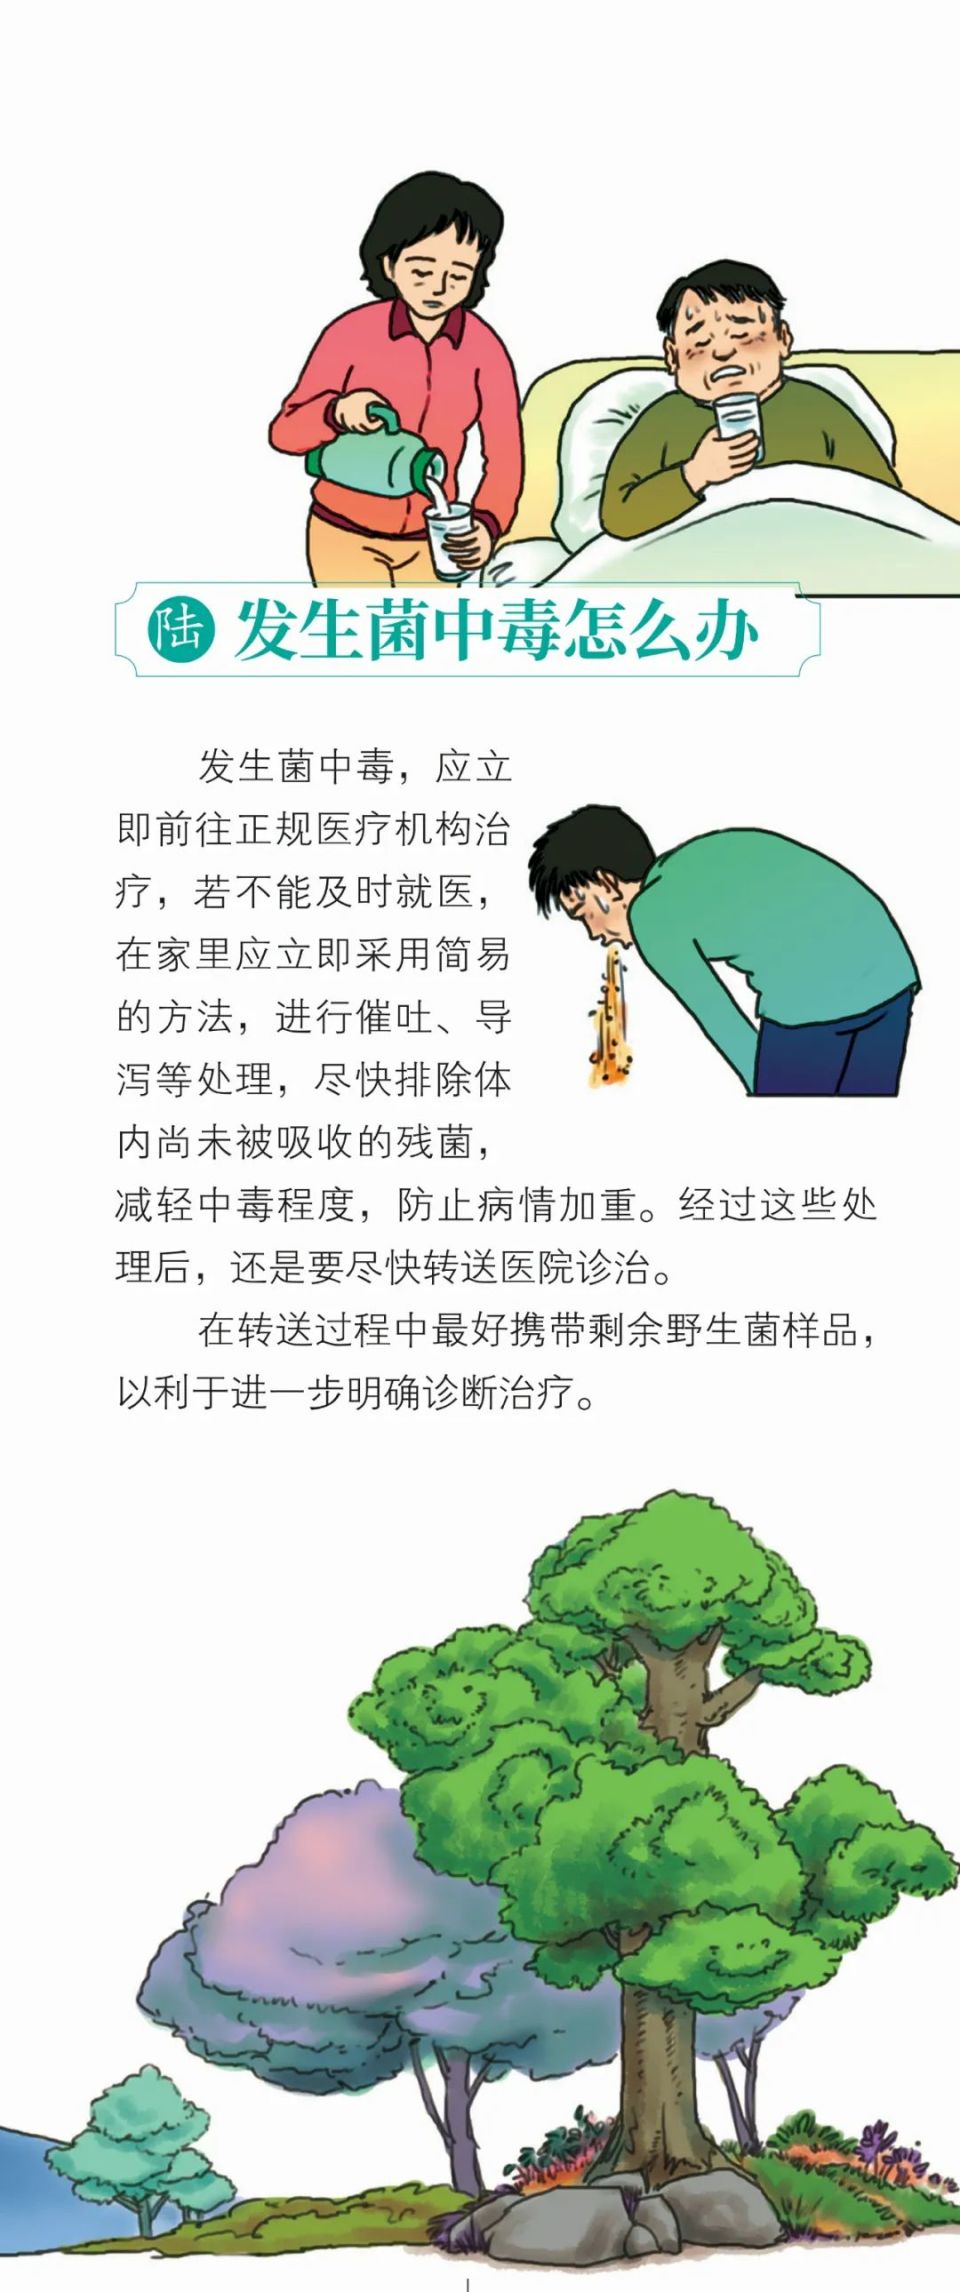 掌上春城,云南省人口与卫生健康宣传教育中心责编:左橙审核:王龙龙